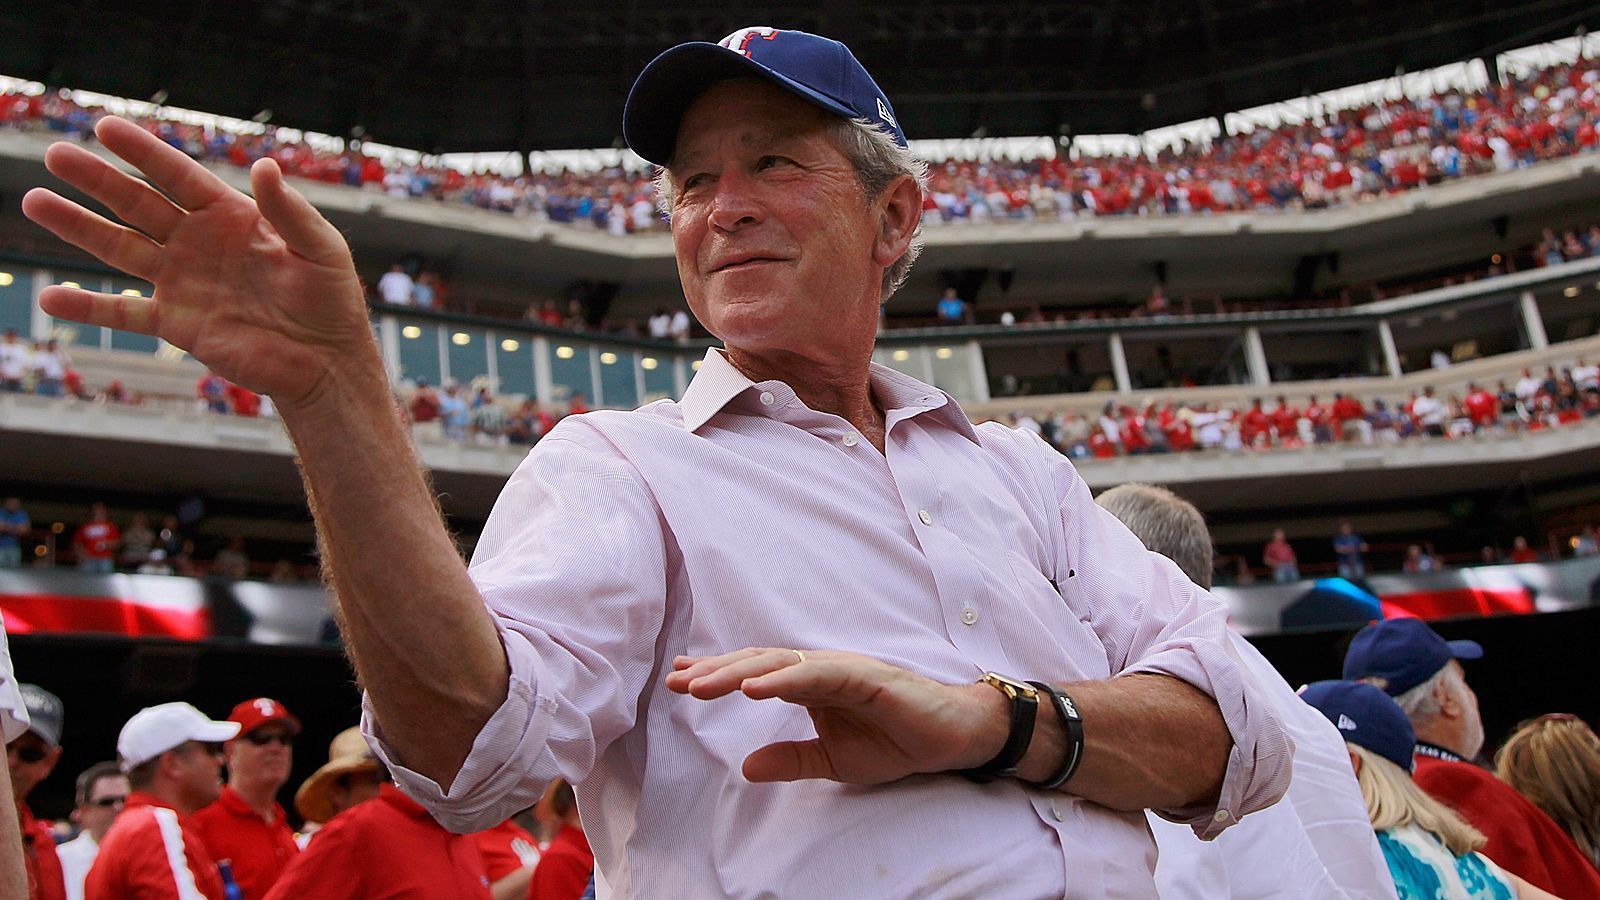 
                <strong>George W. Bush (Houston Texans)</strong><br>
                Als langjähriger Gouverneur von Texas schwärmt der ehemalige US-Präsident George W. Bush auch für die Houston Texans.
              